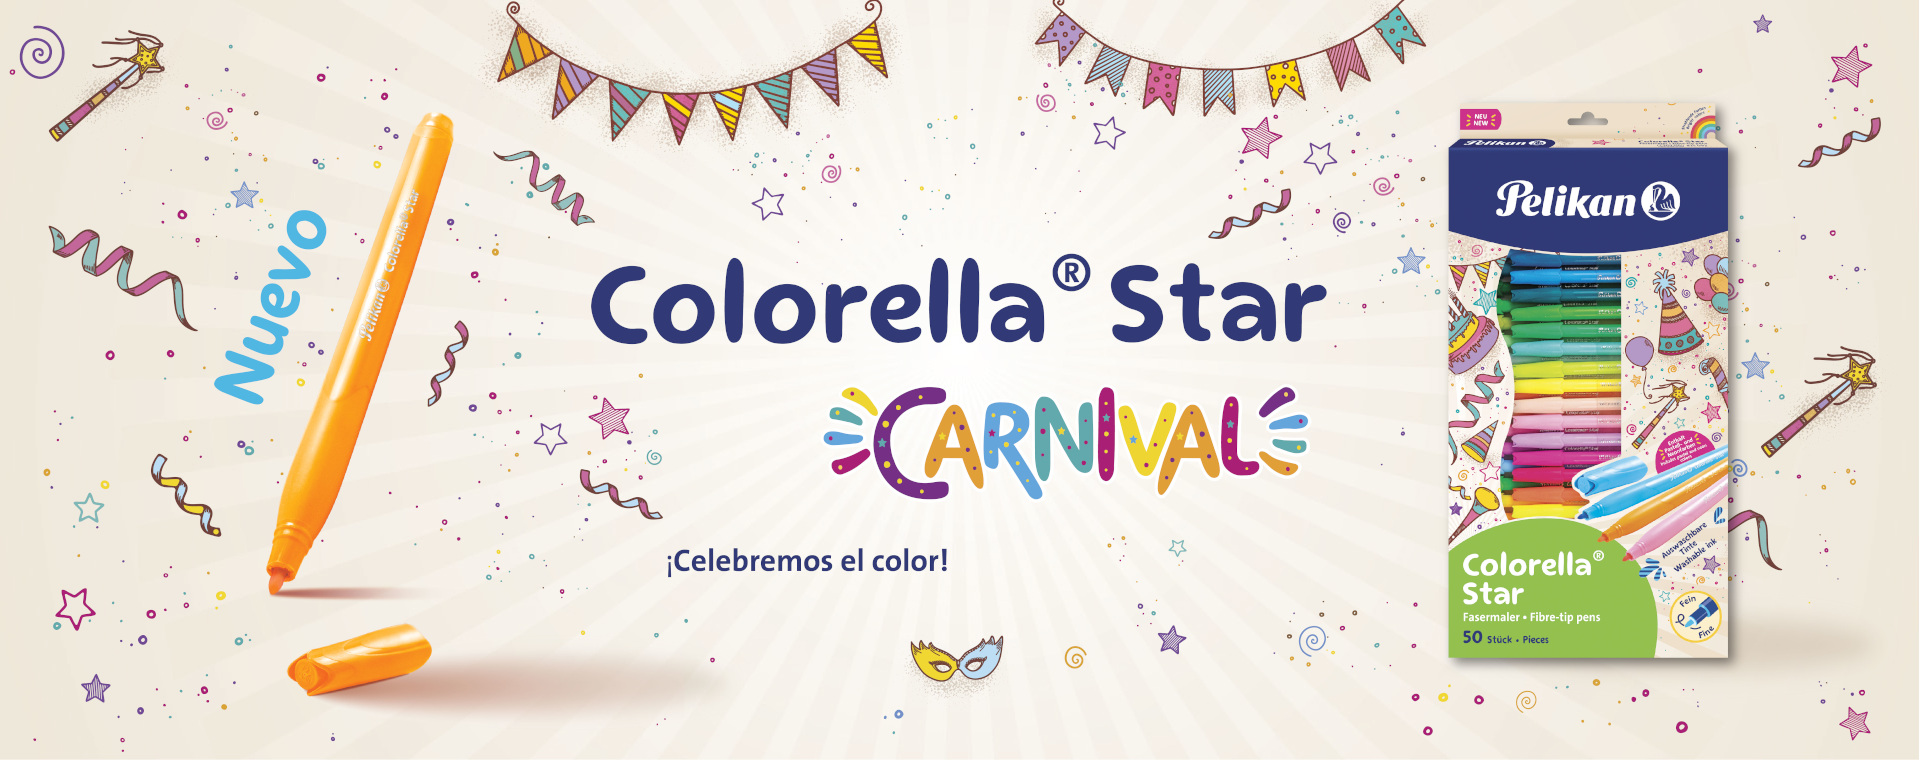 Plumones Colorella Star Carnival